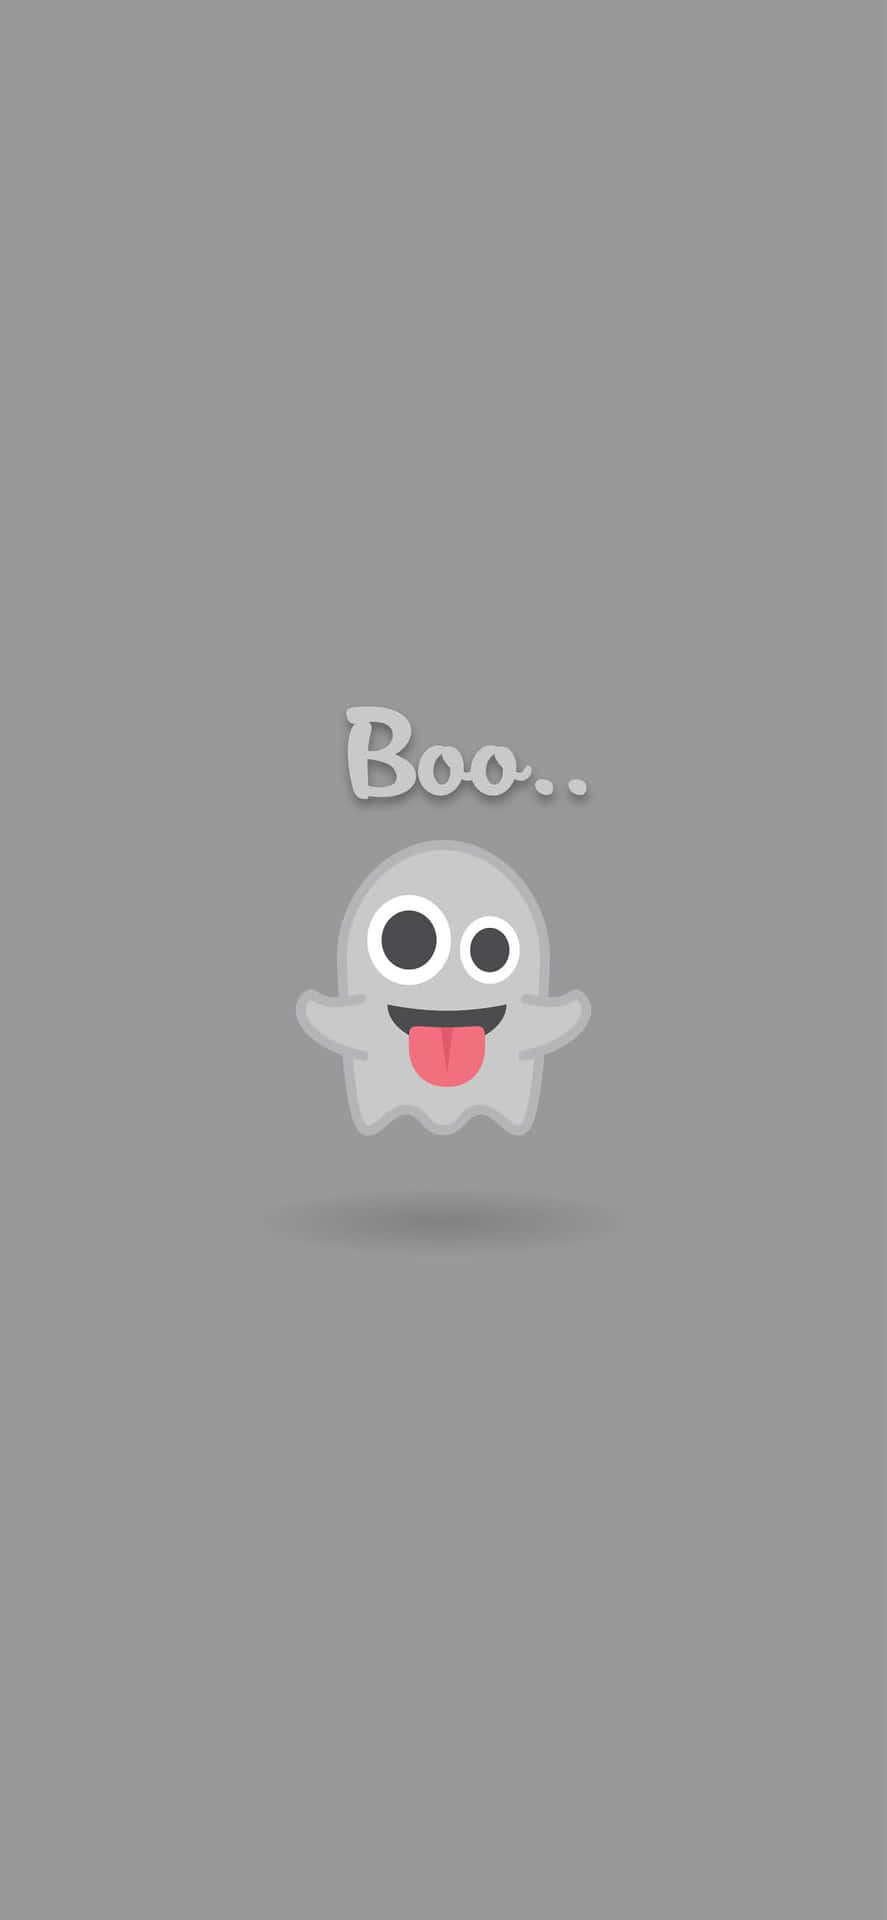 Download Cute Emoji Wallpaper 